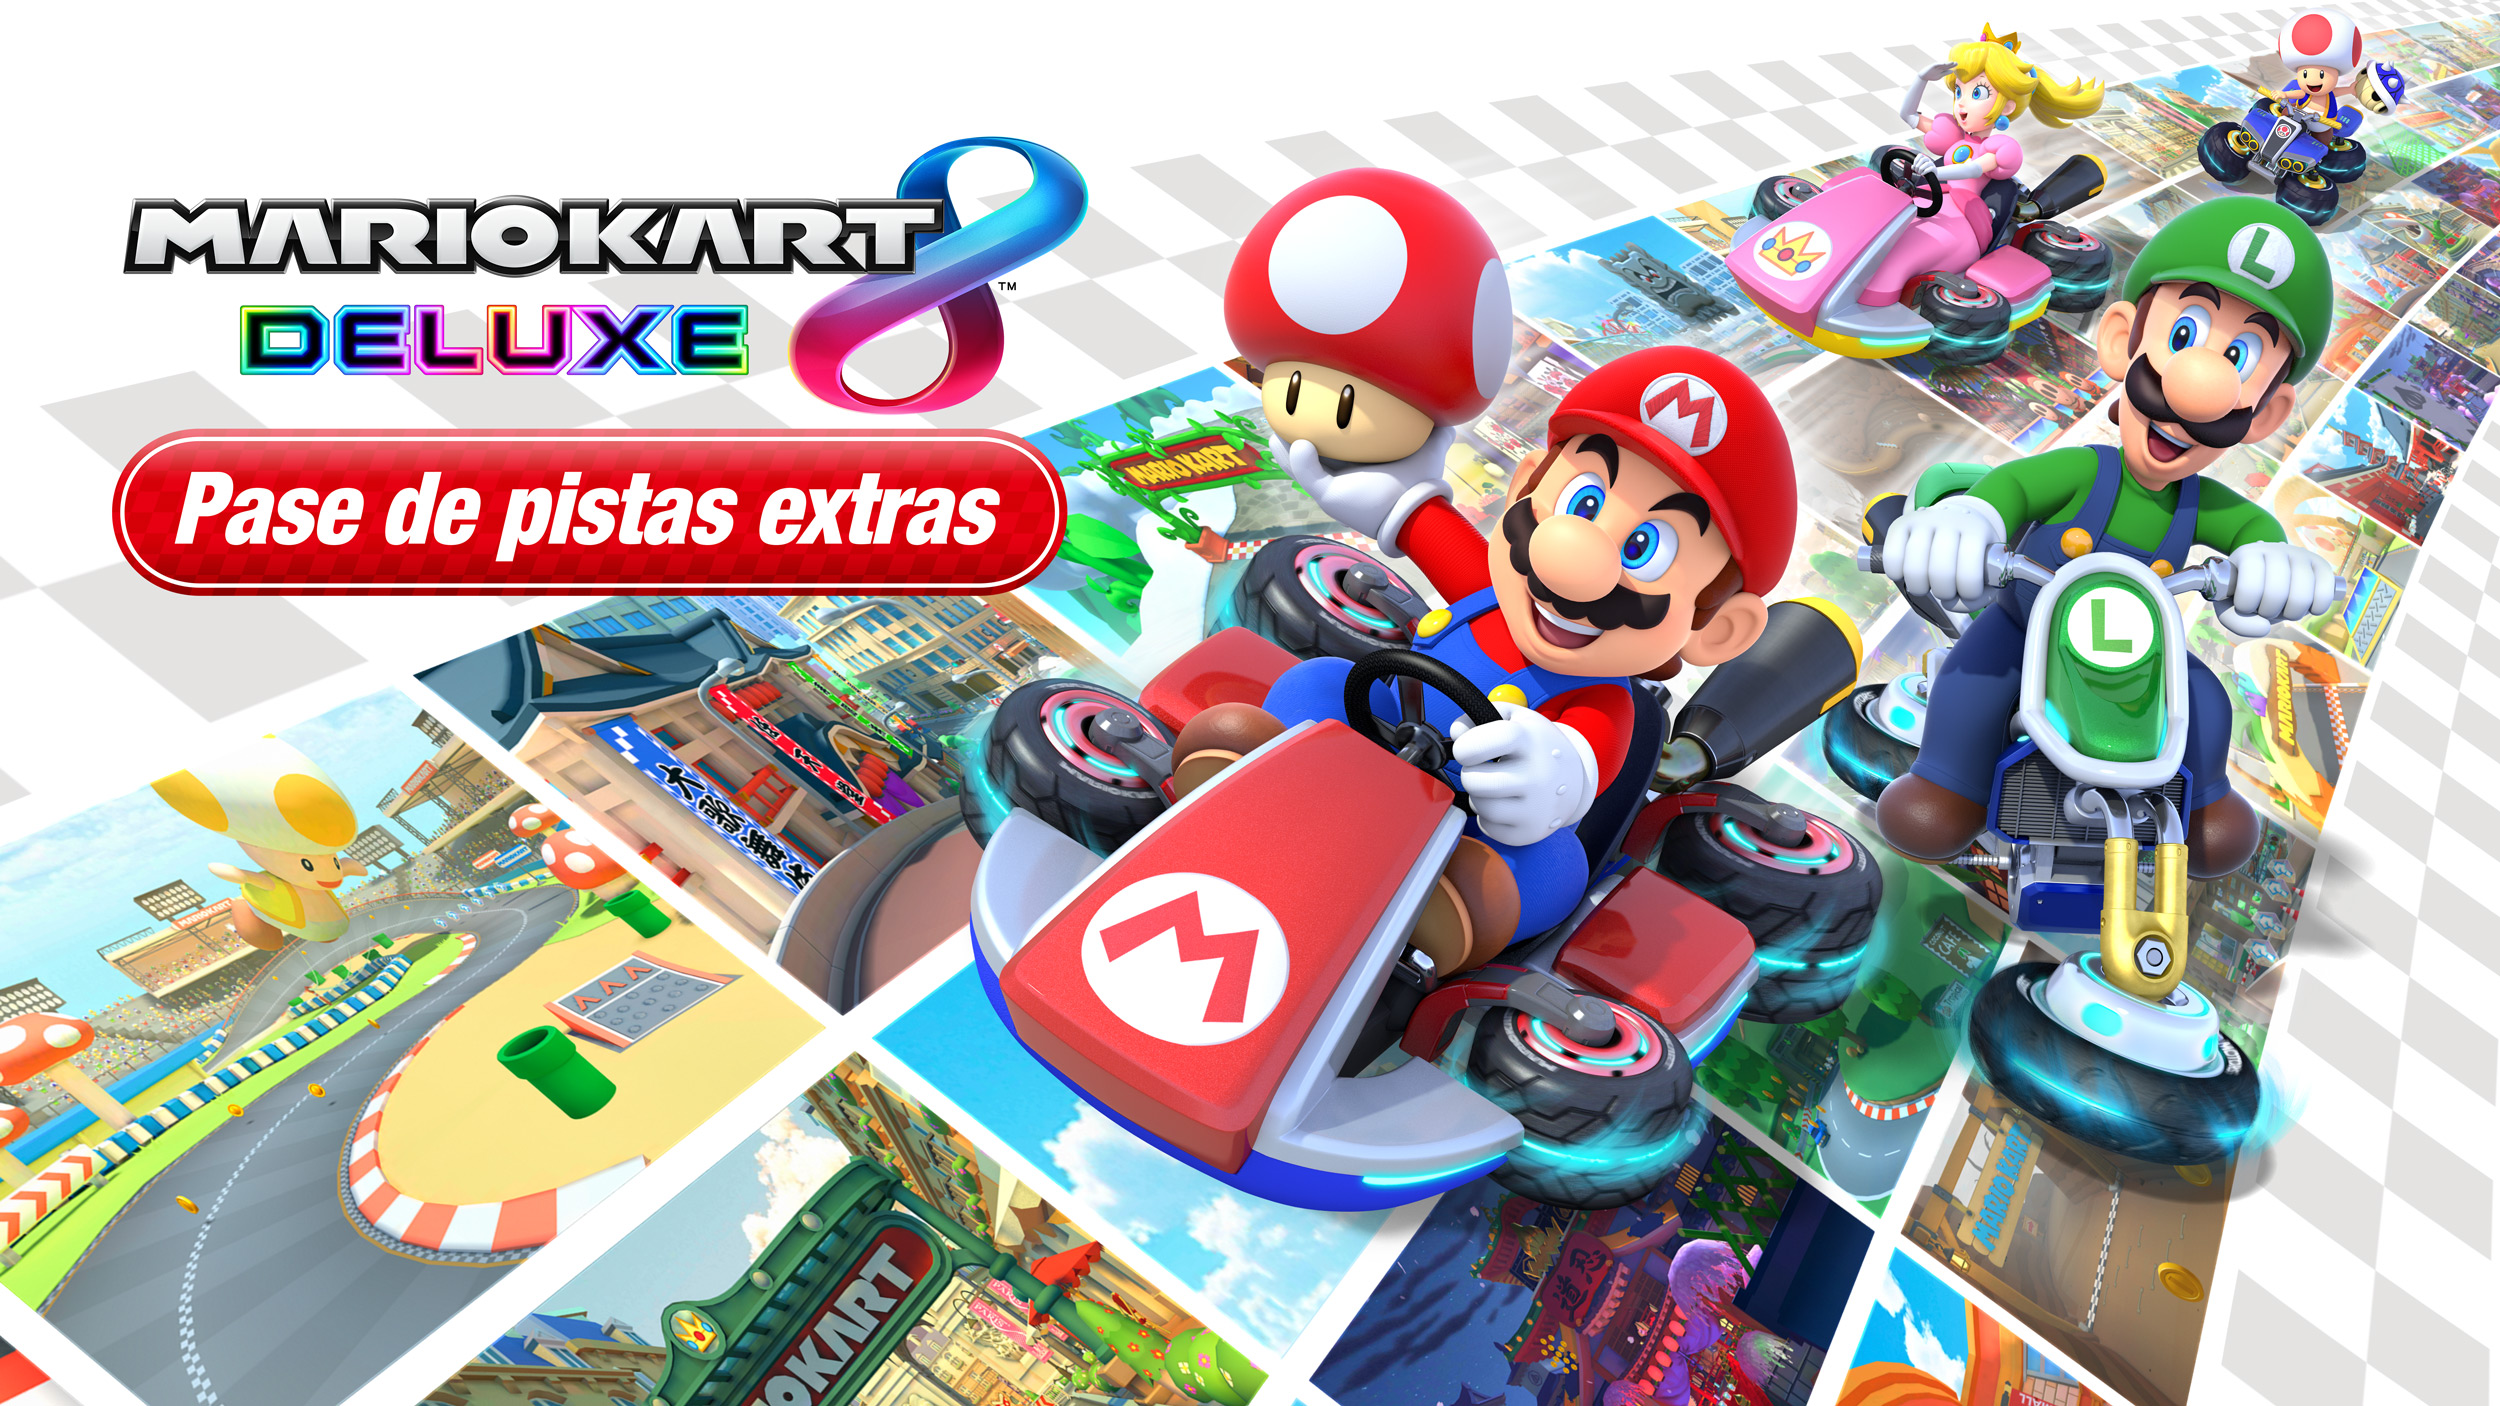 Acelera a fondo y amplía tu experiencia con Mario Kart 8 Deluxe – Pase de pistas extras, disponible este viernes